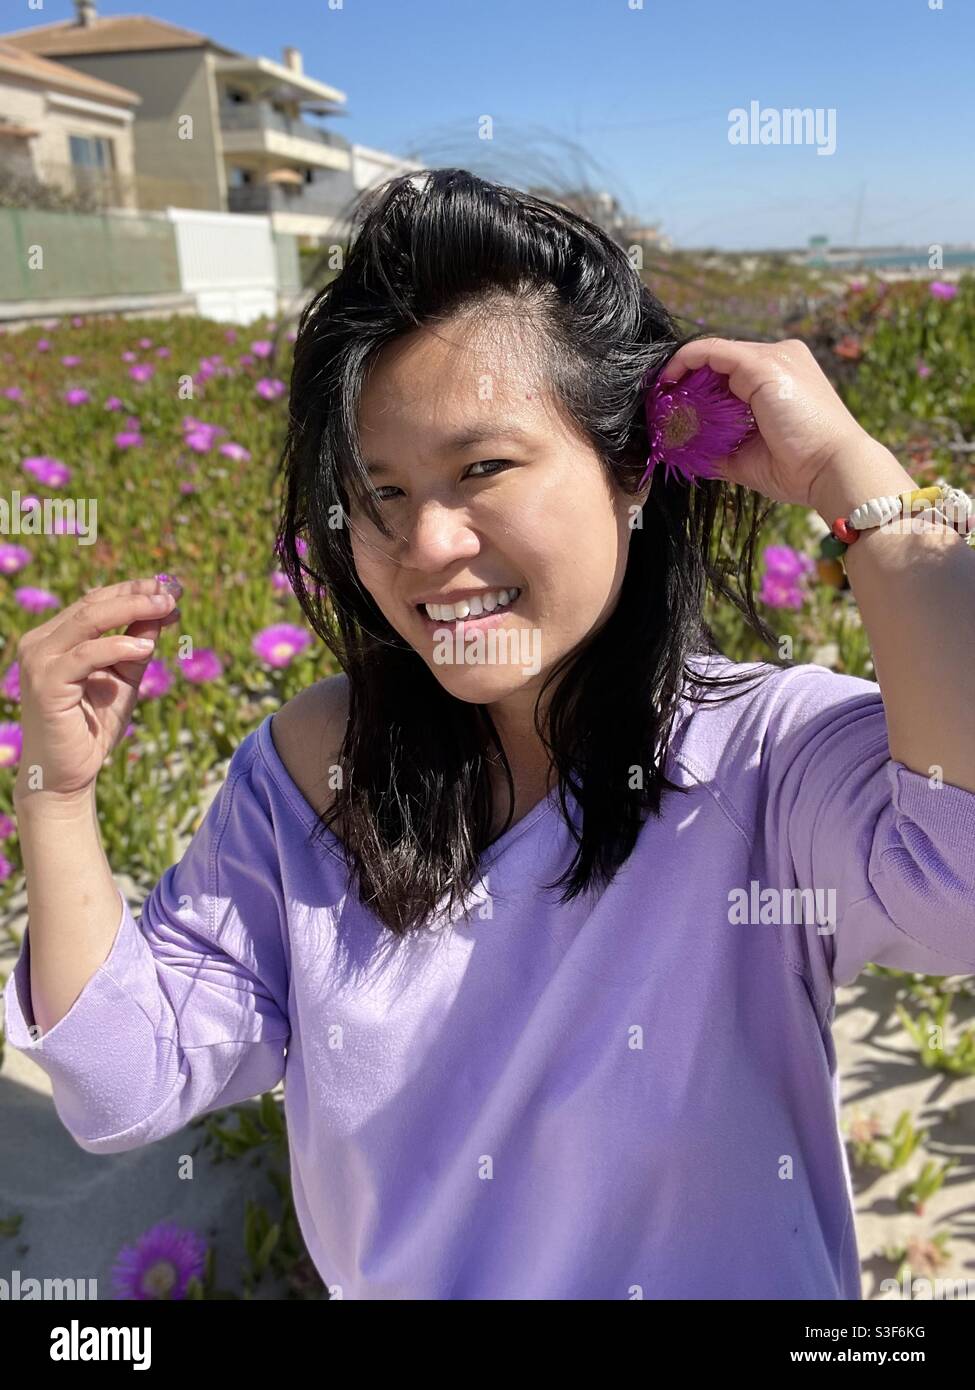 Exótica mujer filipina del sudeste asiático poniendo una flor púrpura en su largo cabello negro, frente a suculentas flores de plantas en la playa de Carnon plage, cerca de Montpellier, Occitanie, al sur de Francia Foto de stock